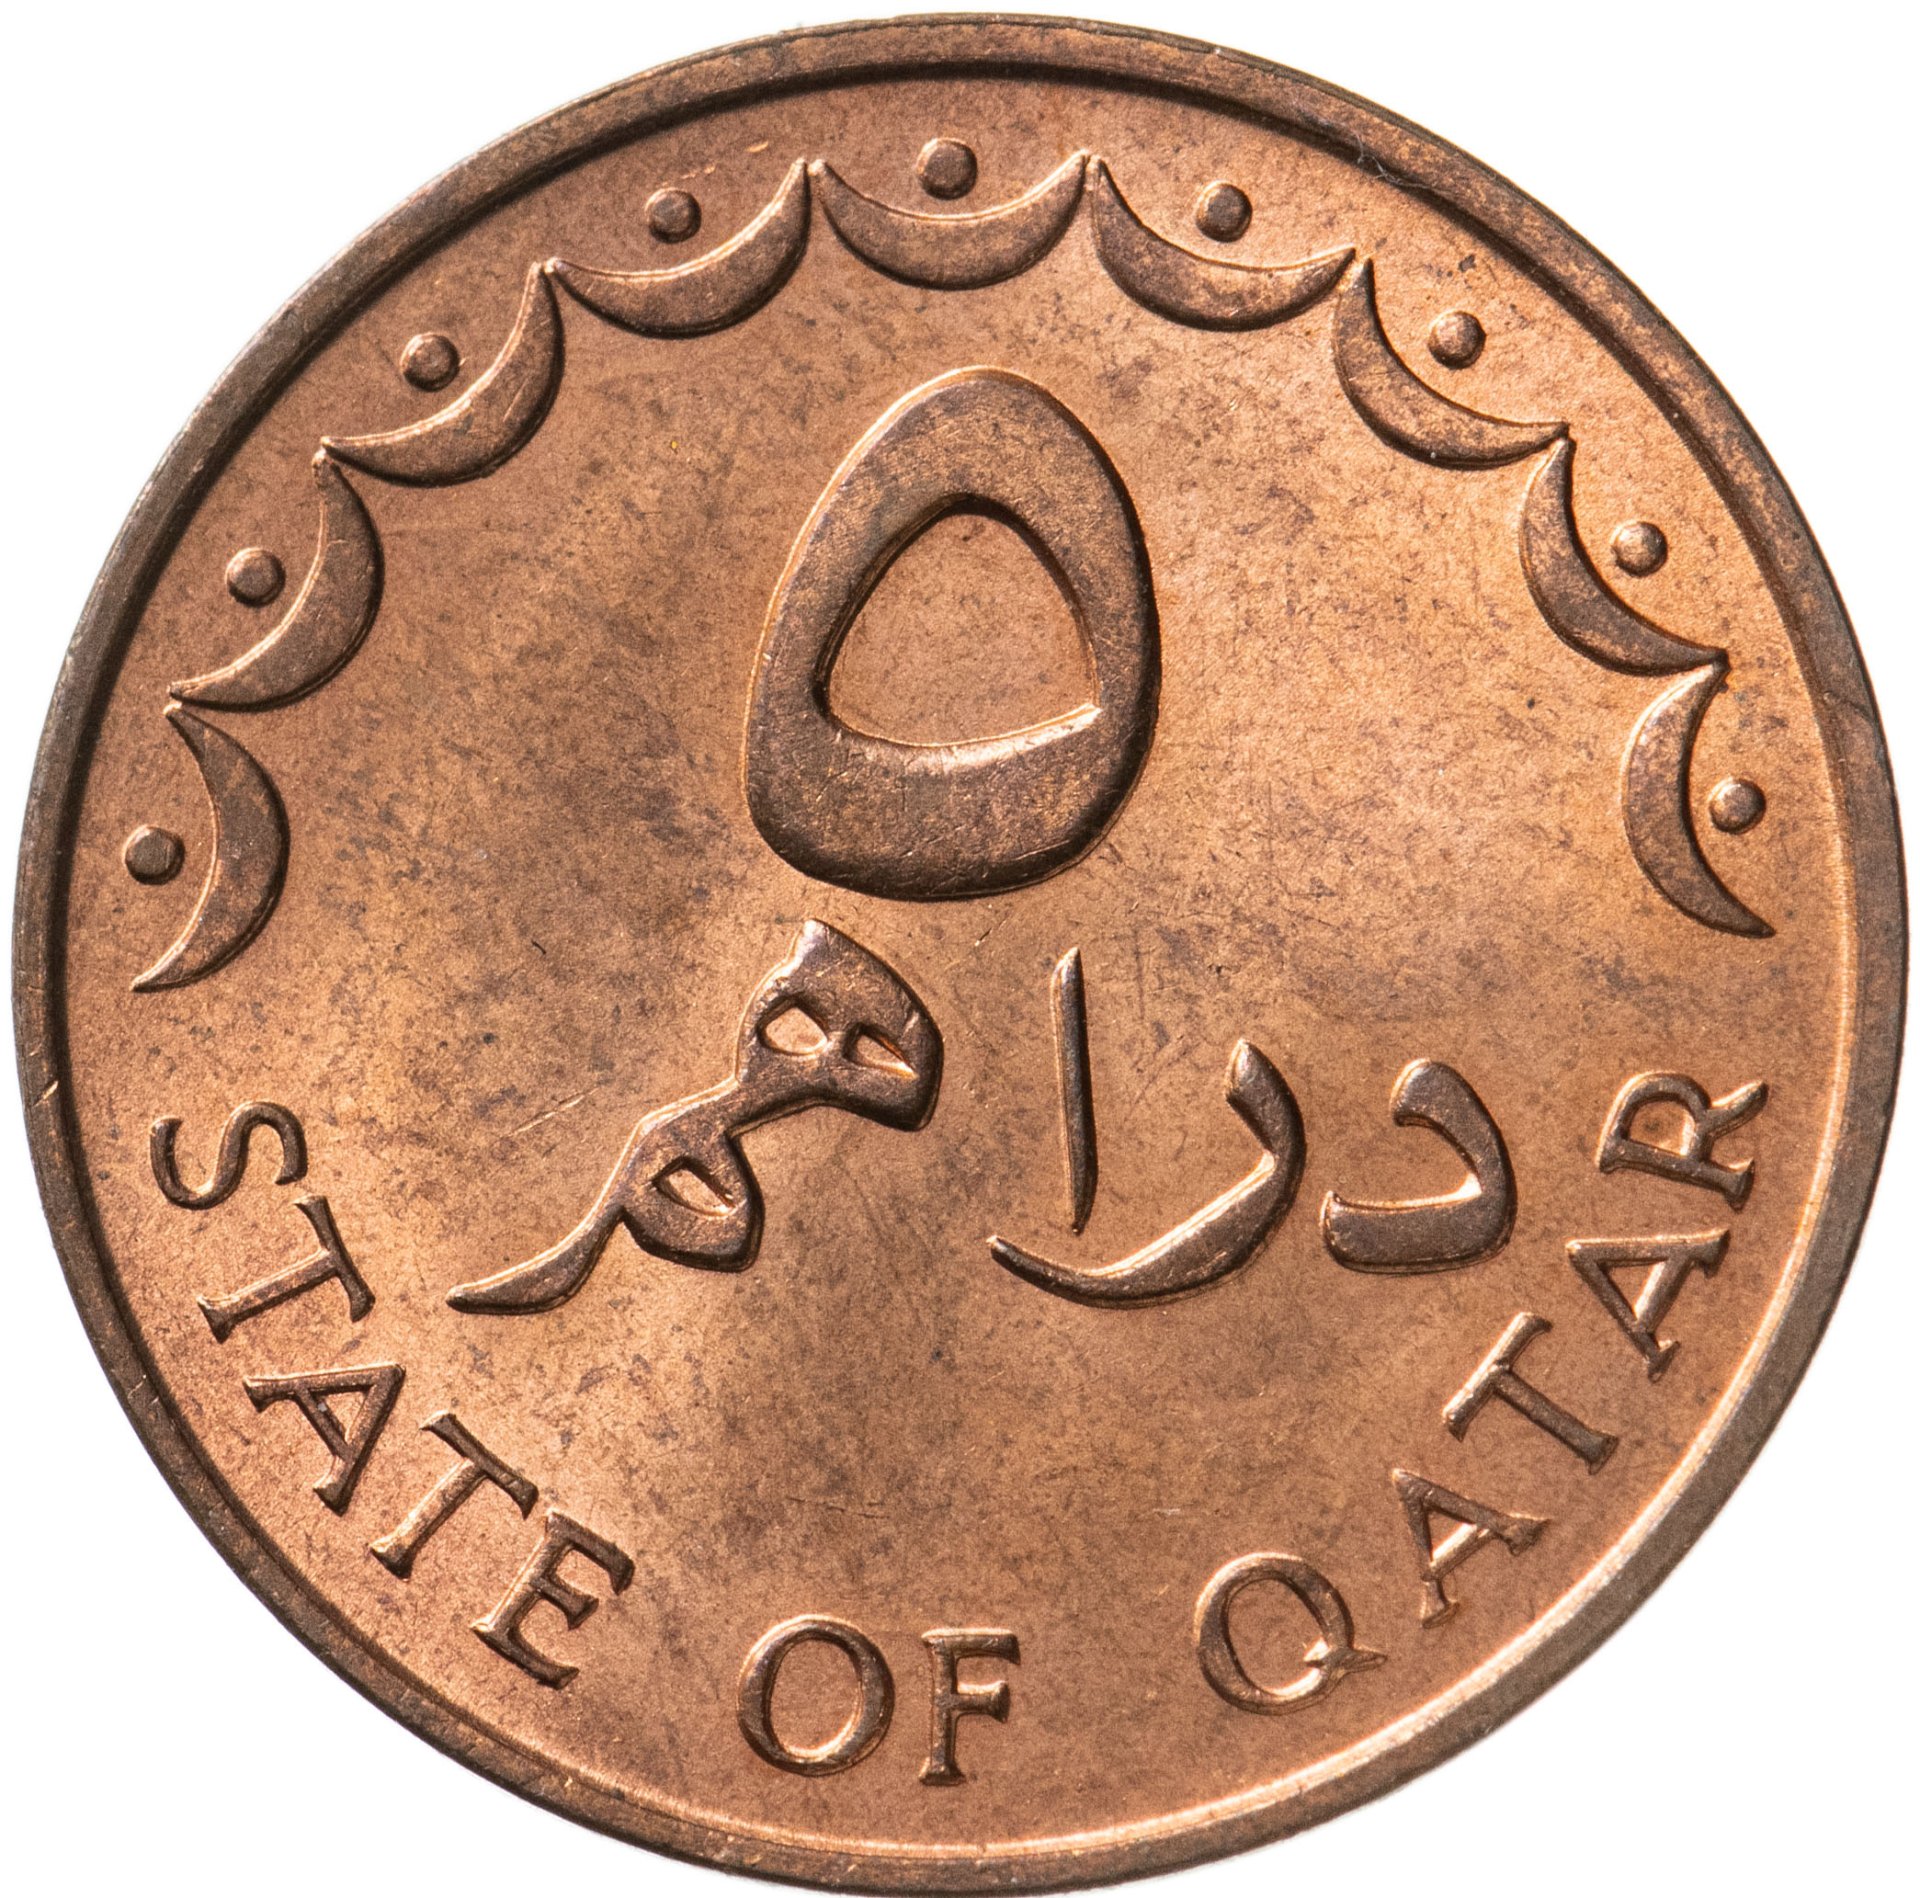 Монеты Катара. Монеты Катара каталог. Миллион марокканских дирхам. 150 000 дирхам